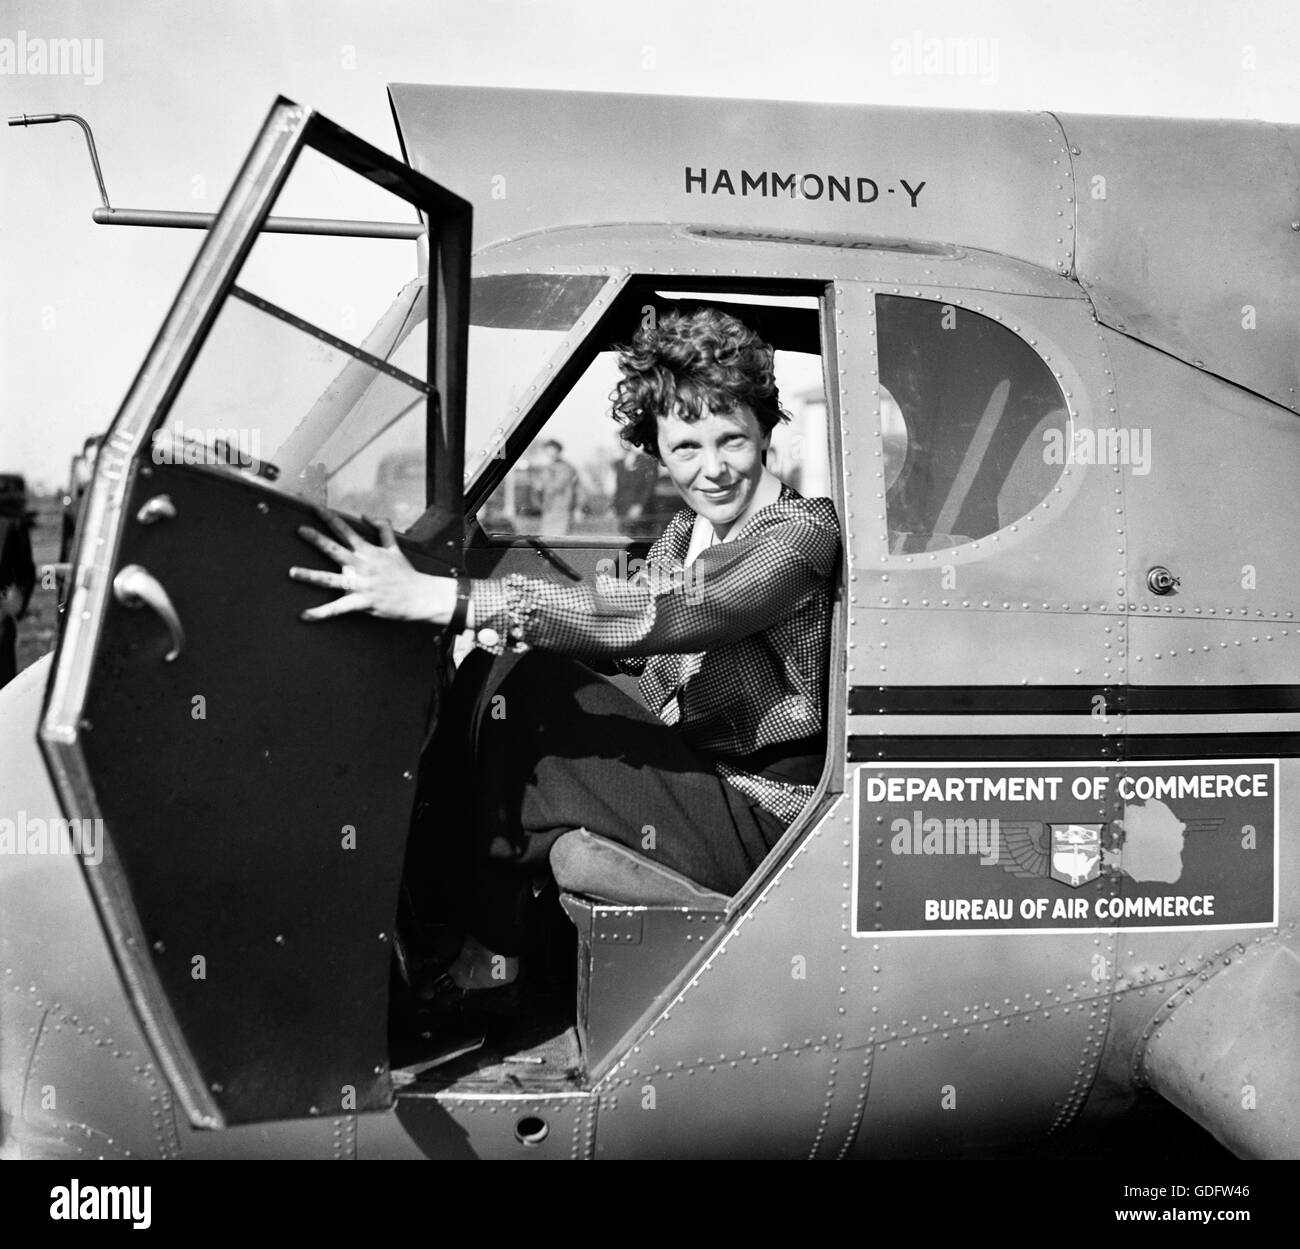 Amelia Earhart (1897-1937) dans le poste de pilotage d'un avion vers 1936. Photo de Harris et Ewing. Banque D'Images